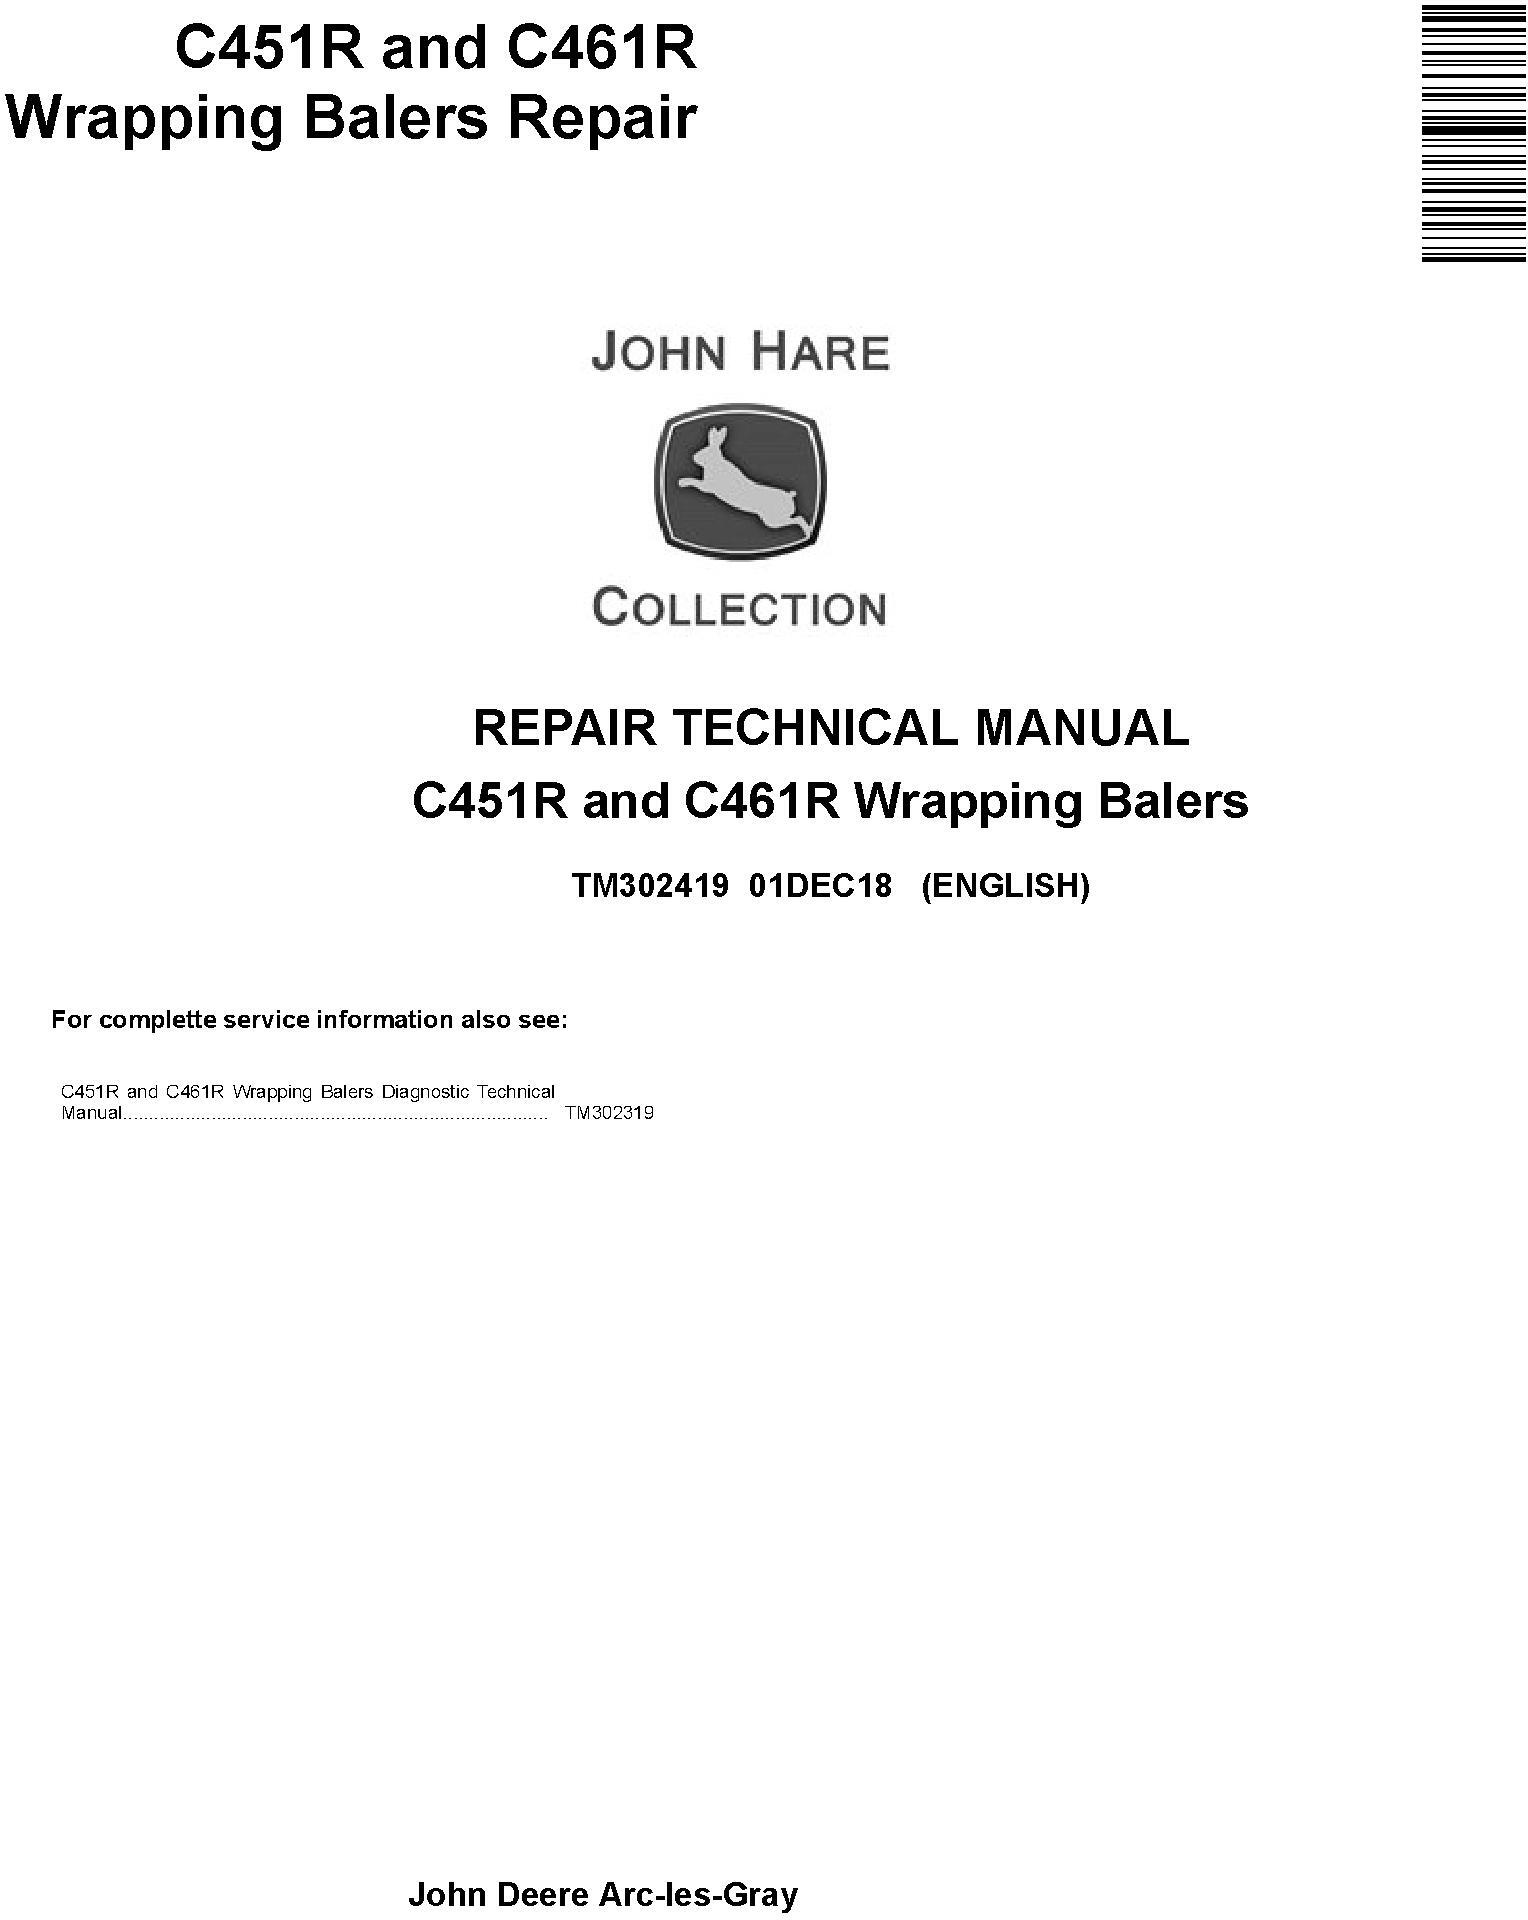 John Deere C451R and C461R Wrapping Balers Service Repair Technical Manual (TM302419) - 19259